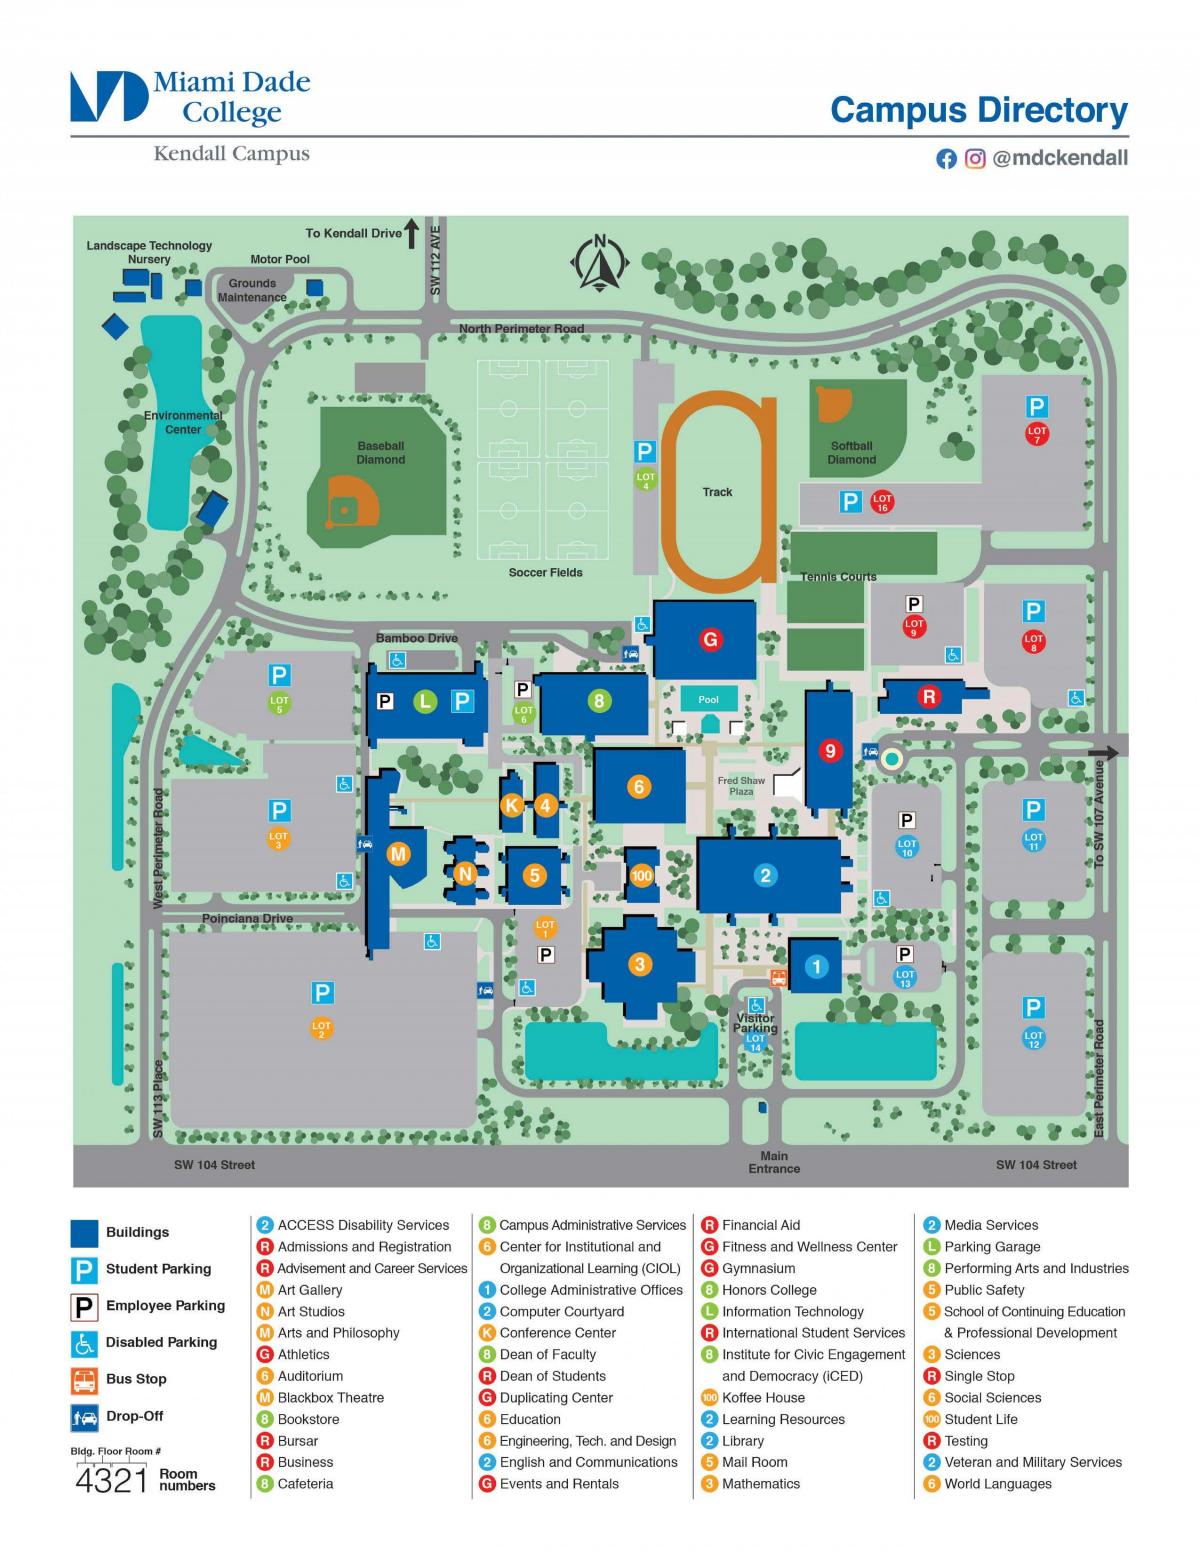 Майами Дейд колледж Кендалл карте кампуса